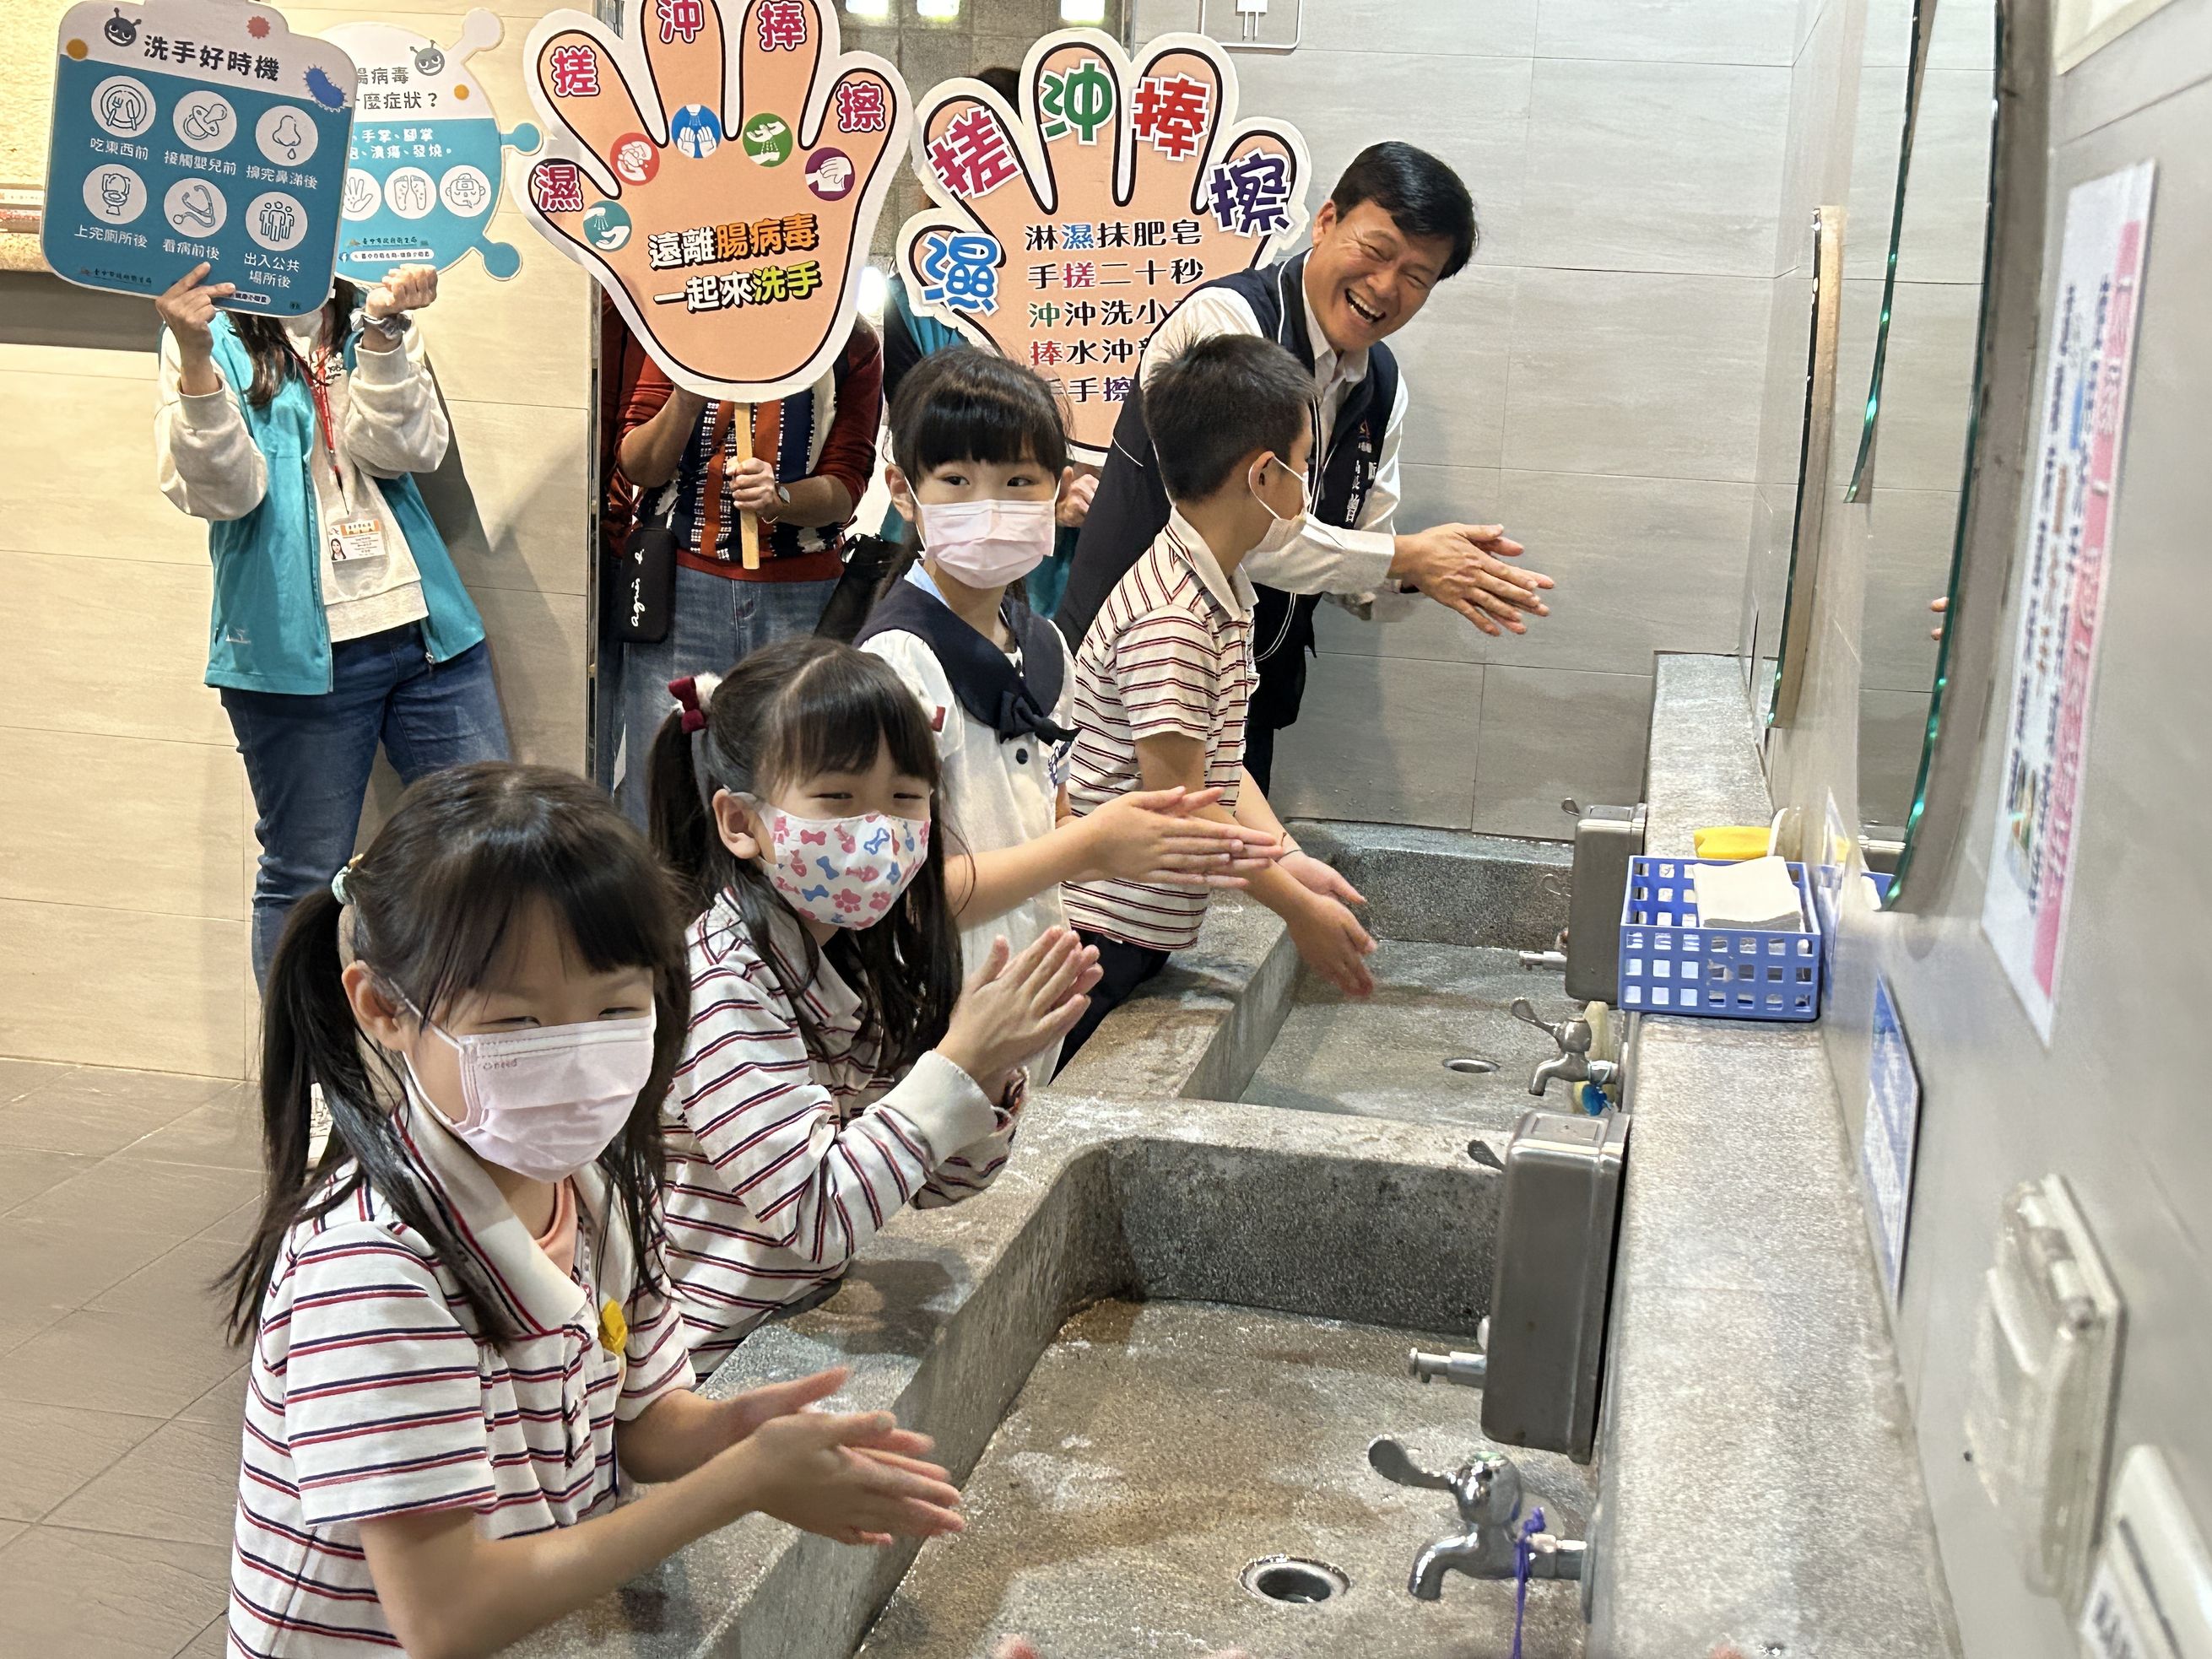 卫生局长曾梓展（后）今教学童正确洗手五步骤「湿、搓、冲、捧、擦」。记者赵容萱／摄影